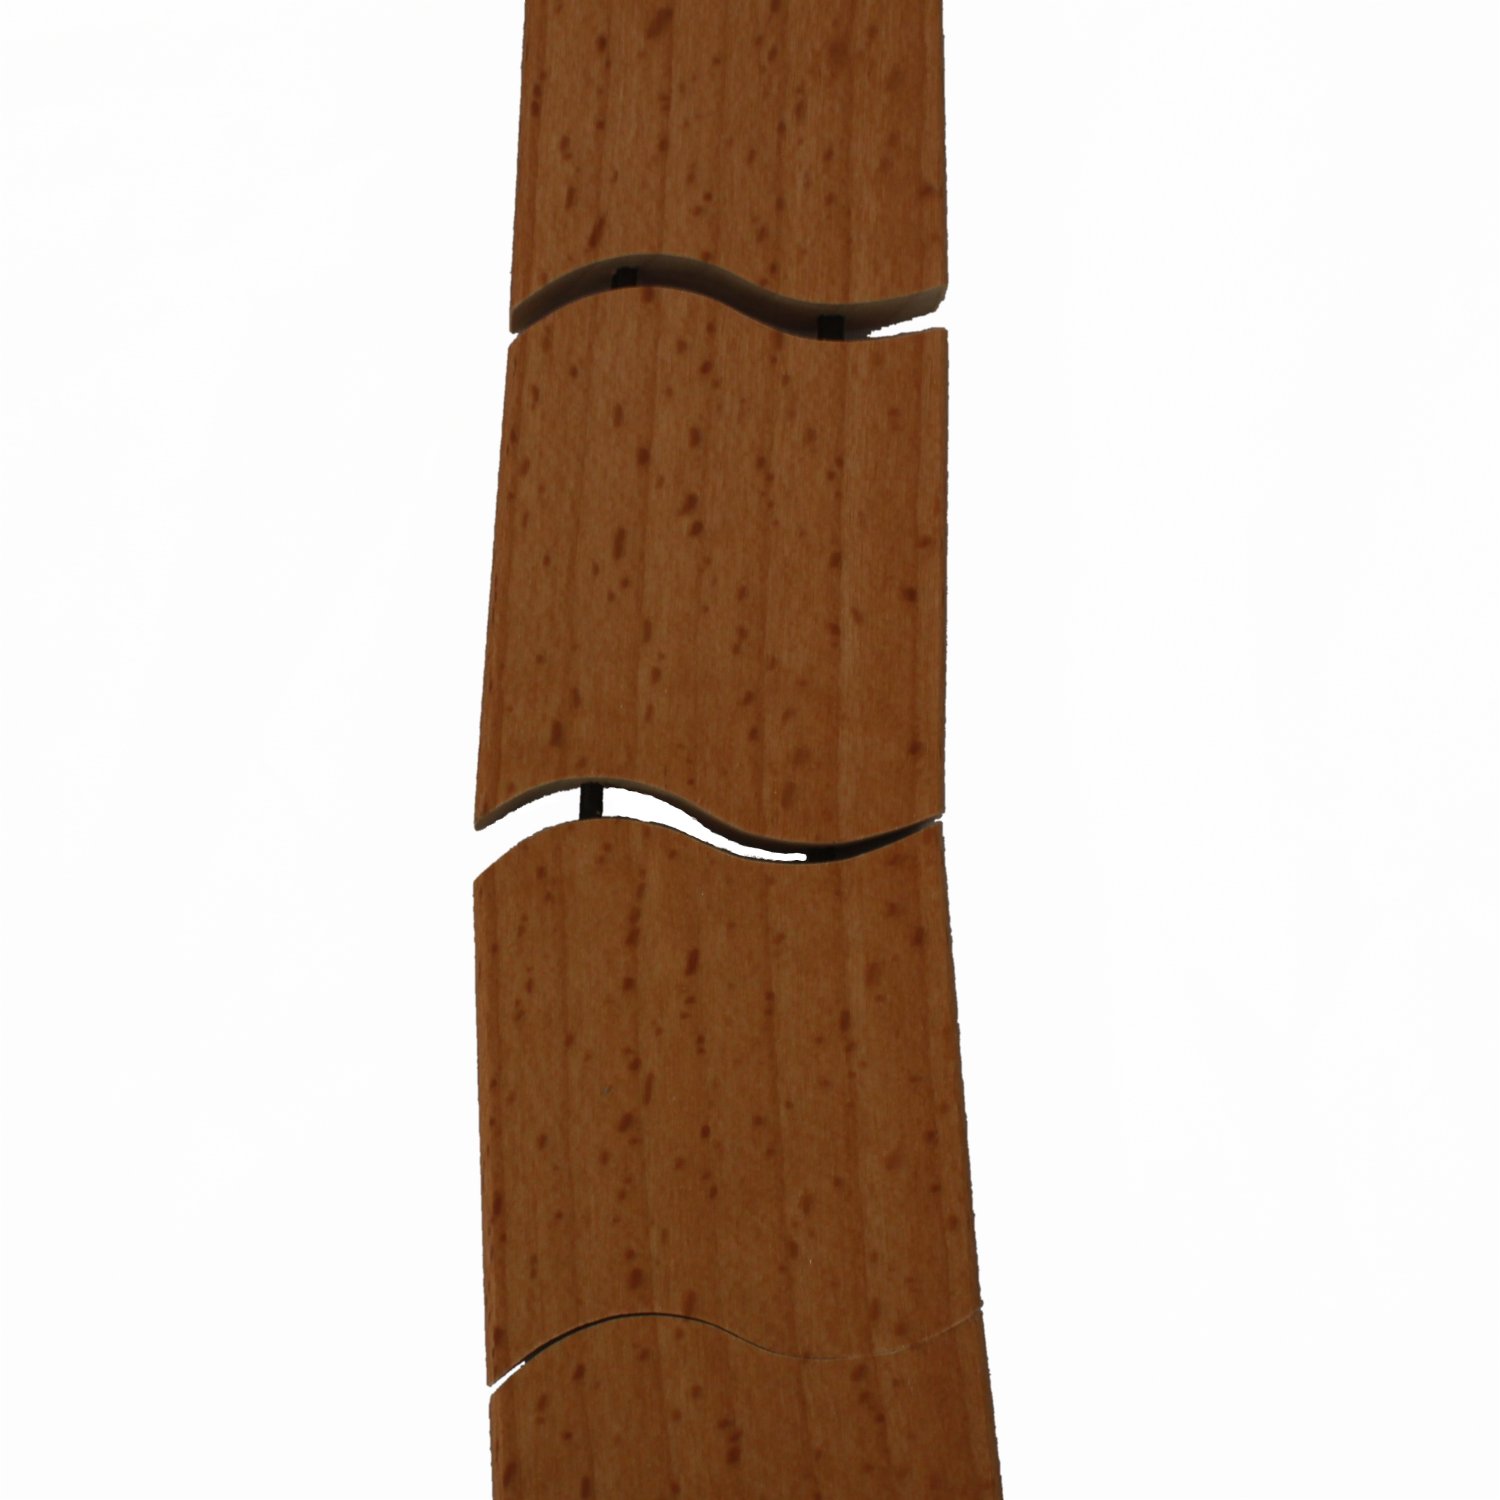 Krawatte aus gedämpften Buchenholz mit beweglichen Elementen